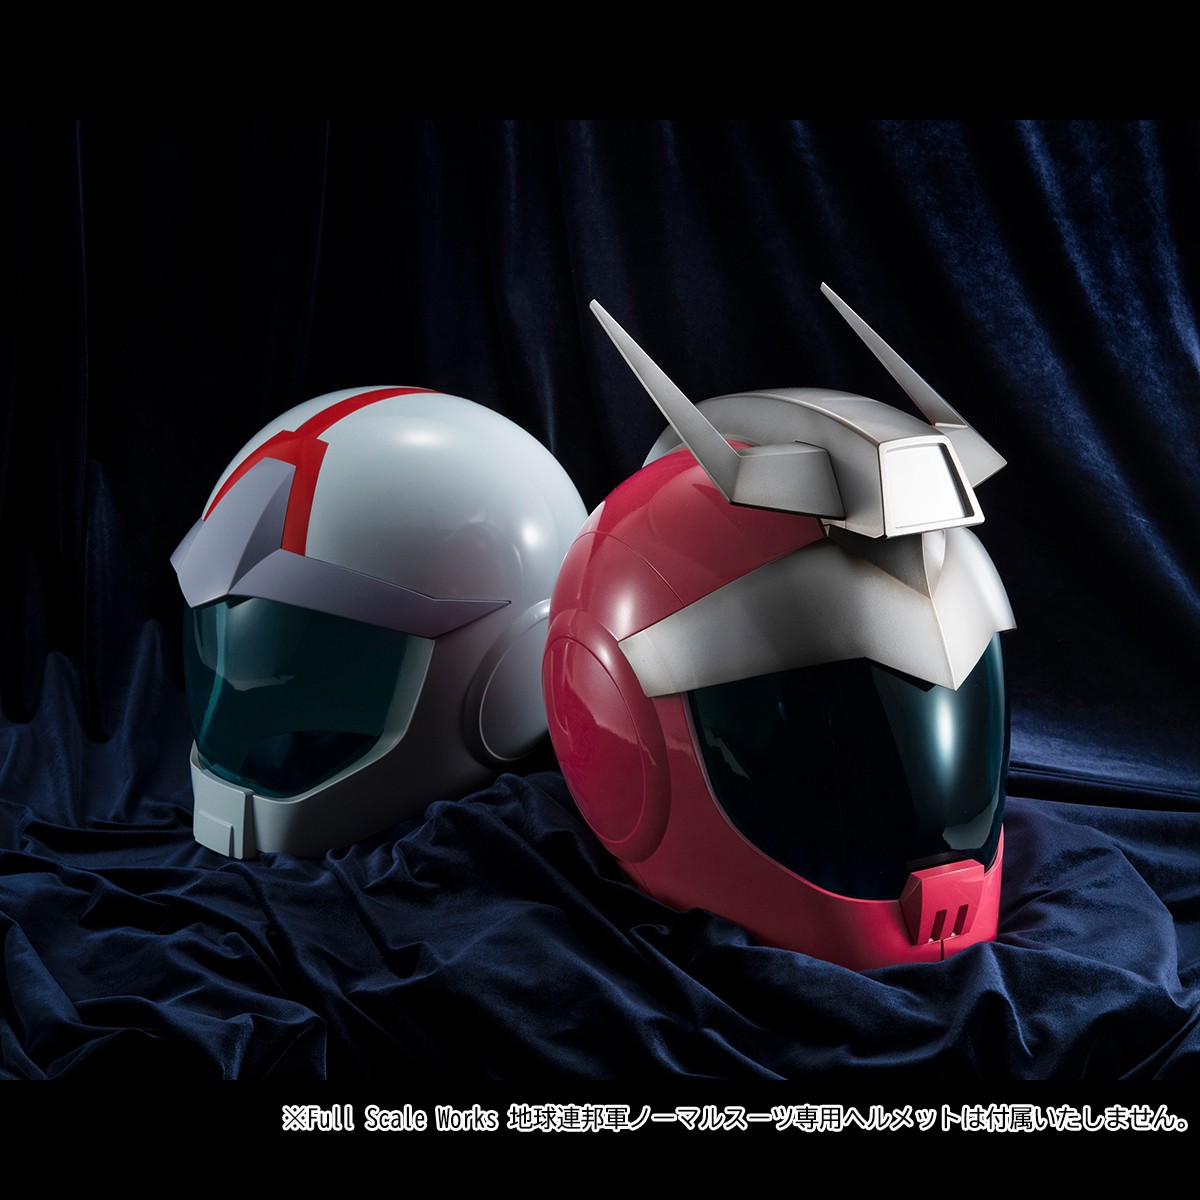 《高达》主题完整尺寸夏亚头盔公开 颜色略有差异